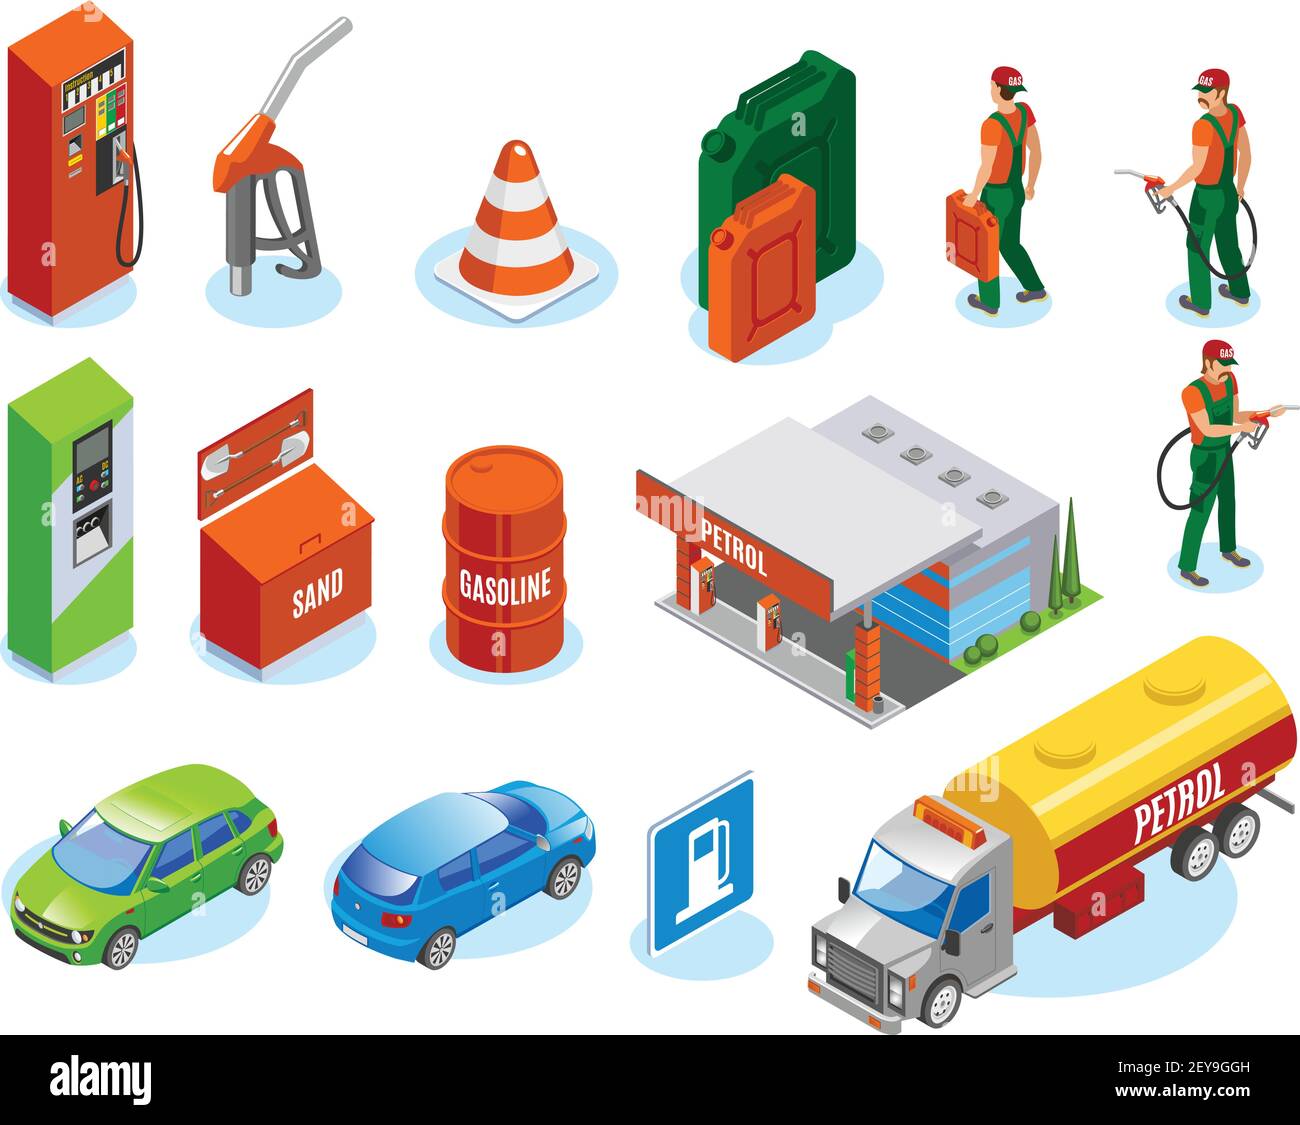 Stations-service remplit la collection Icons isométriques avec des personnages fuelman et illustration vectorielle d'images isolées de voitures et d'unités de ravitaillement Illustration de Vecteur